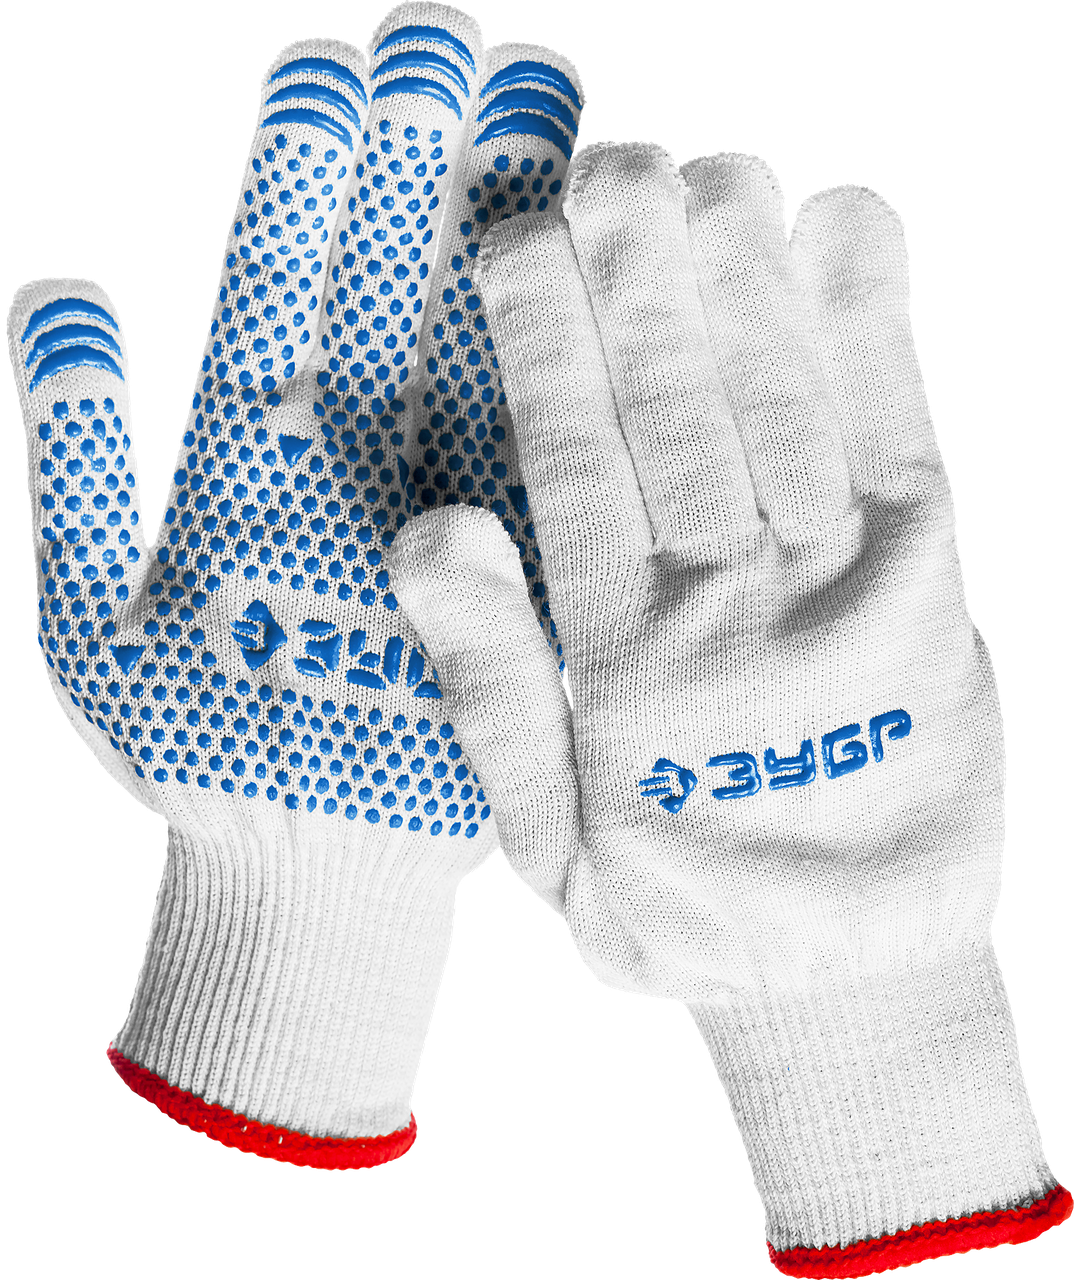 ЗУБР ТОЧКА+, размер S-M, перчатки с точками увеличенного размера, х/б 13 класс, с ПВХ-гель покрытием (точка)